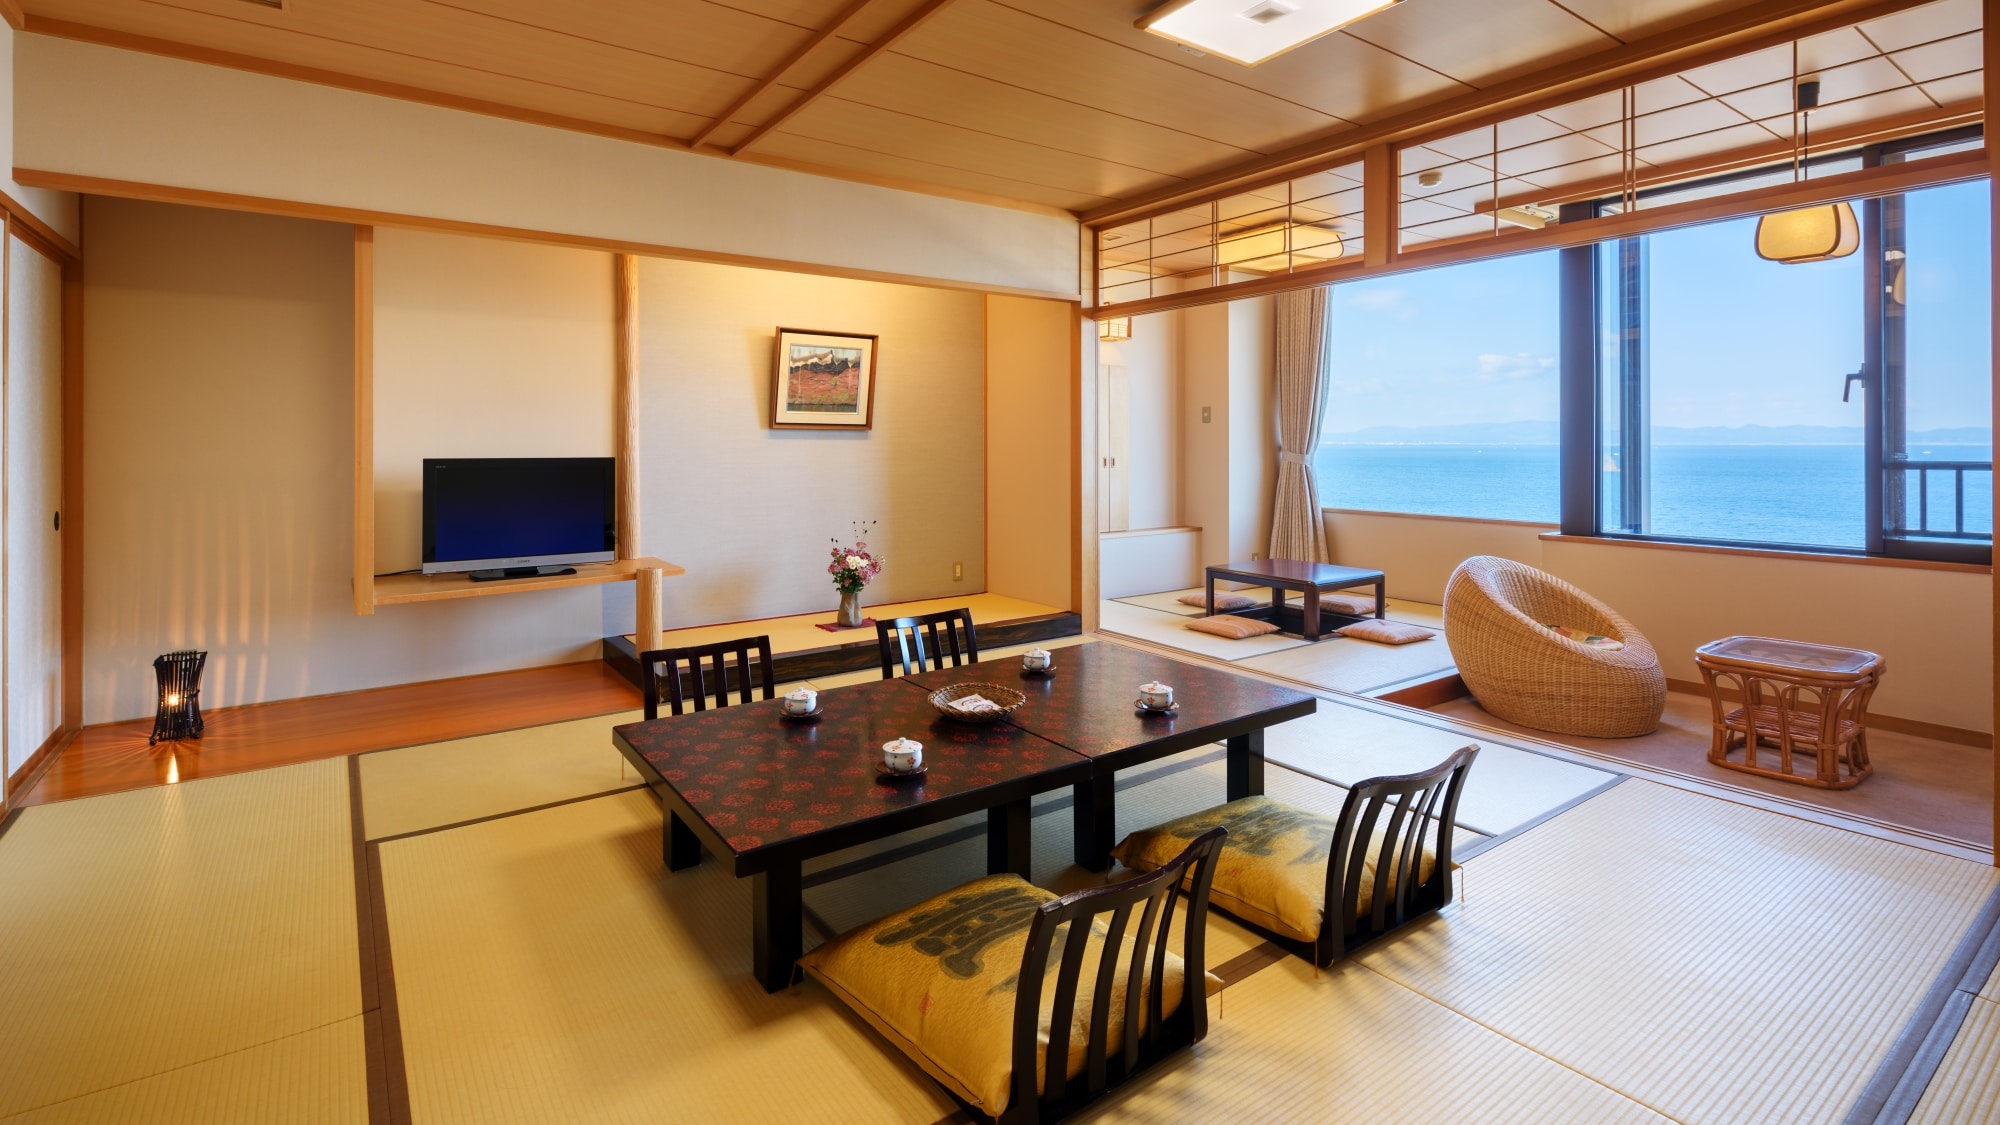 Kamar bergaya Jepang dengan kursi rotan yang bagus. Lihatlah laut dengan santai dari jendela. (12,5 tipe tatami)